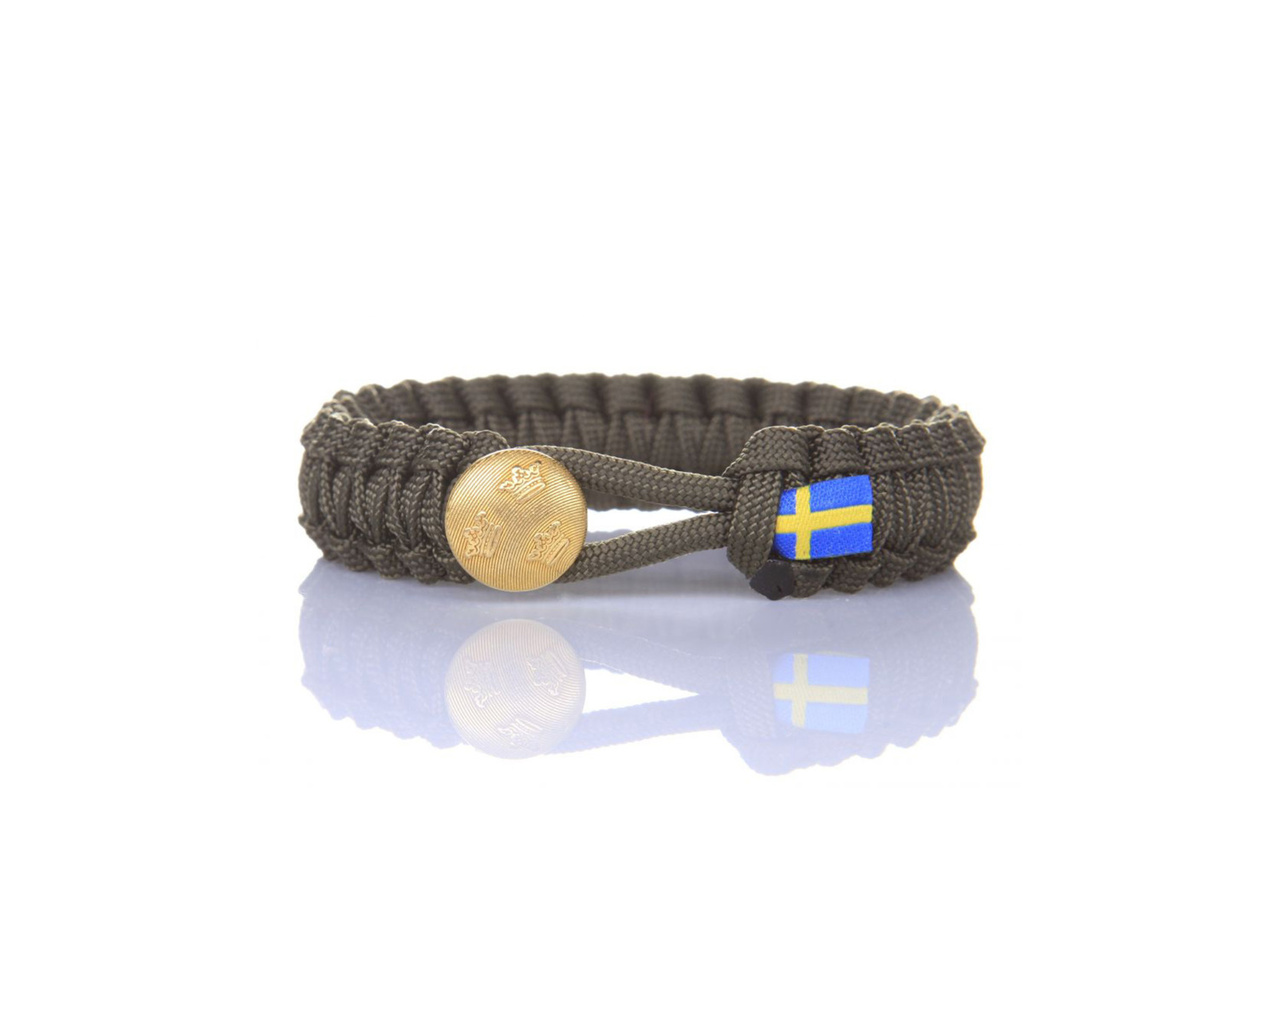 Svenska Försvarsmakten - Three crown